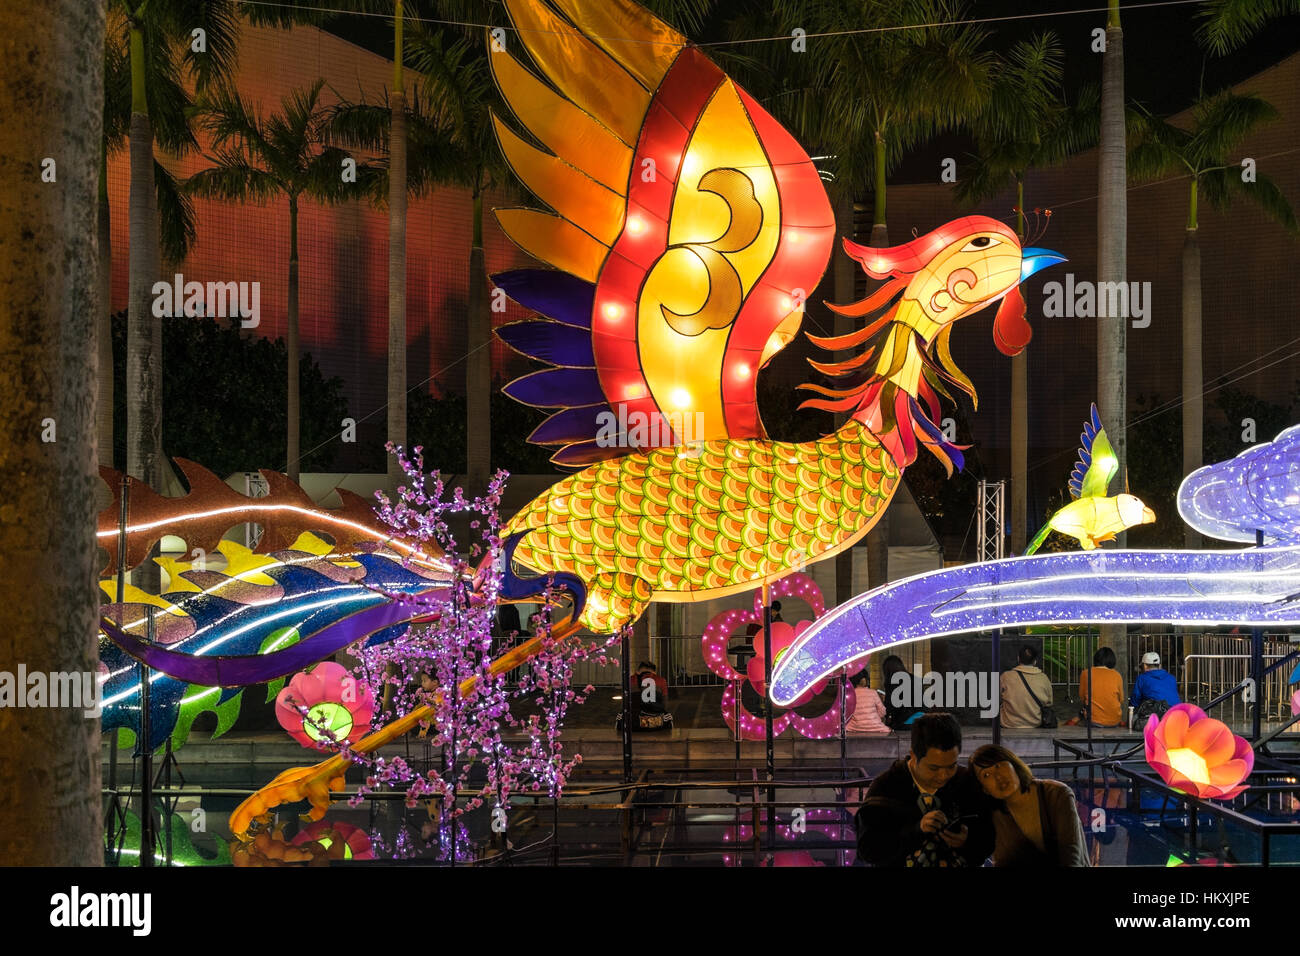 Riesige Hahn Laterne Anzeige an das chinesische Neujahr 2017 "Jahr des Hahns" Feier mit jungen asiatischen Paar in Tsim Sha Tsui, Hong Kong. Stockfoto